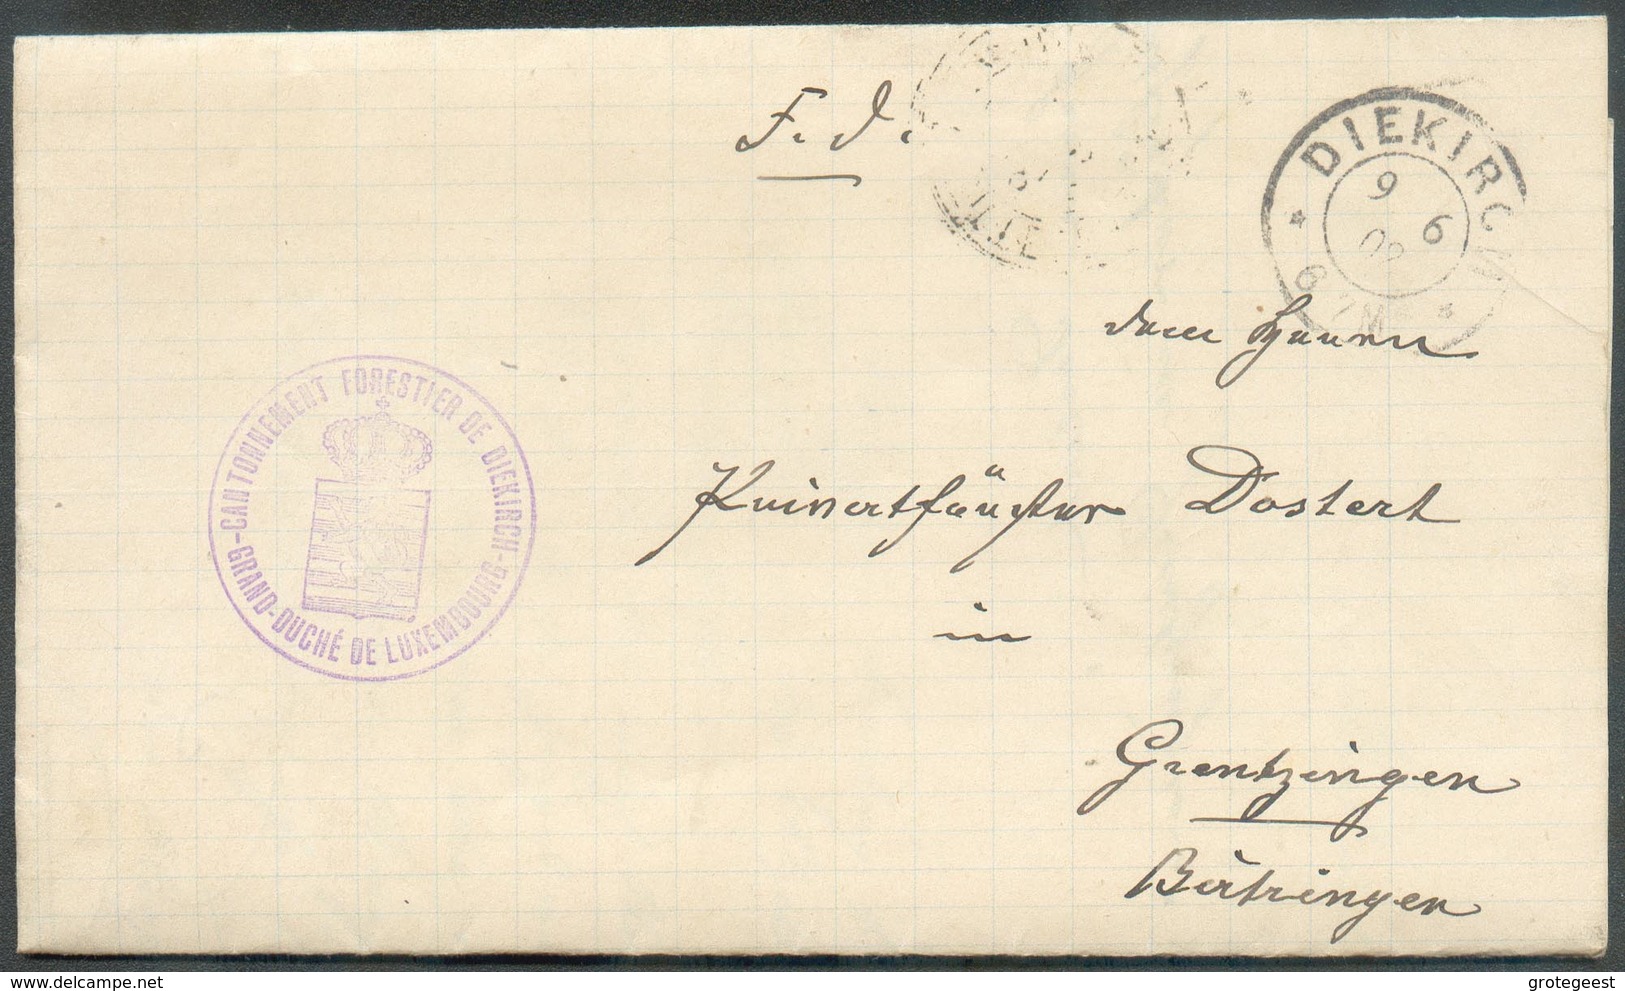 Lettre En Franchise De Port De DIEKIRCH Le 9-6-1902 Avec Cachet Violet CANTONNEMENT FORESTIER DE DIEKIRCH * GRAND-DUCHE - Service